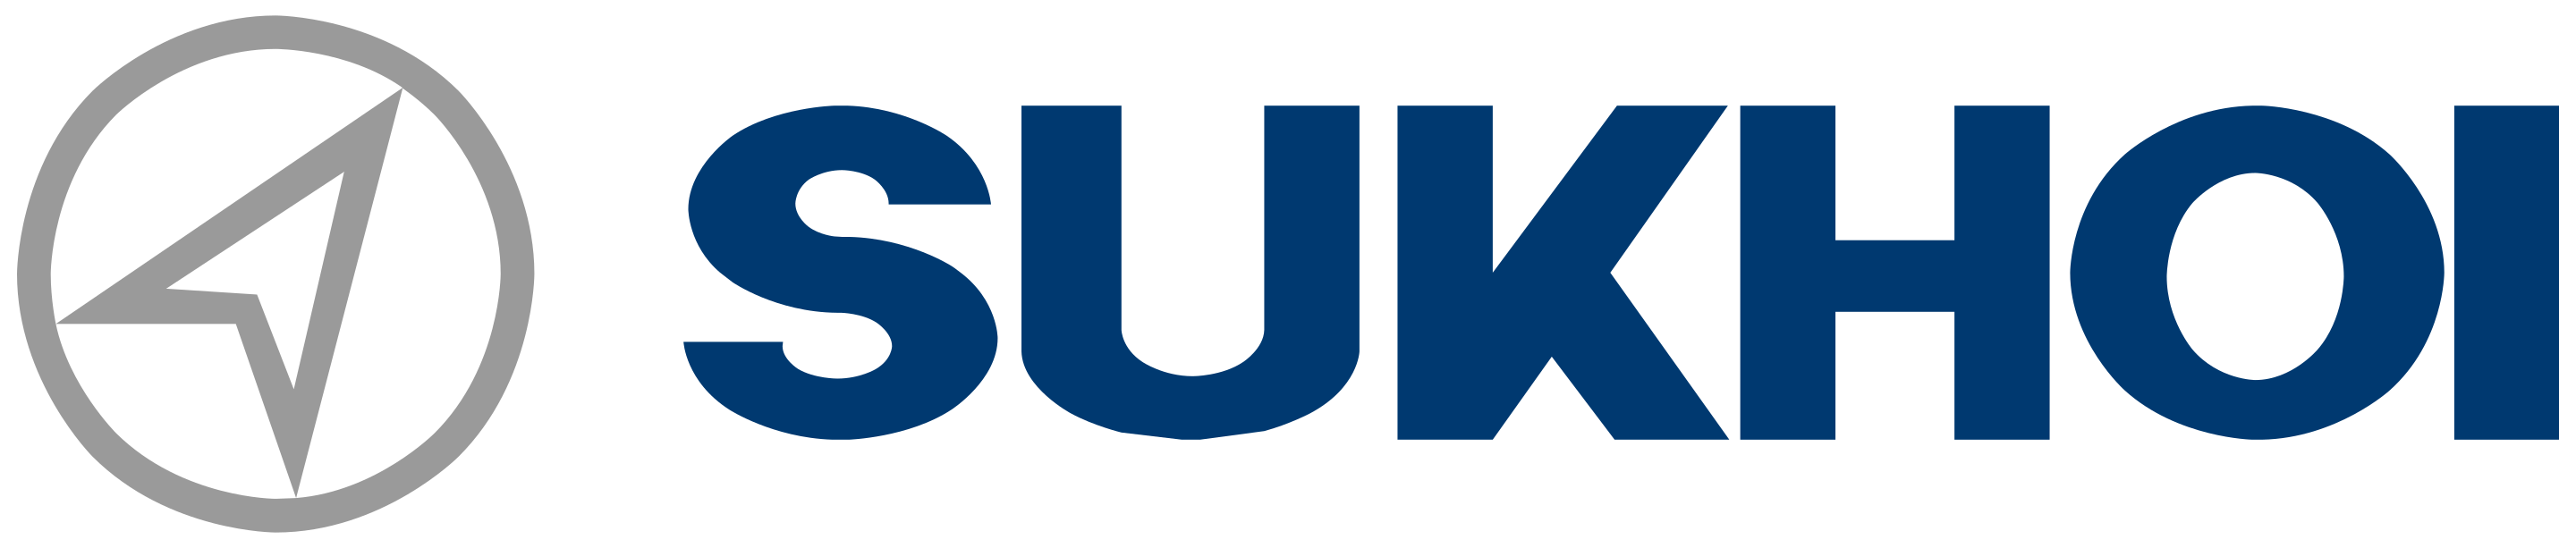 OKB Sukhoi Logo